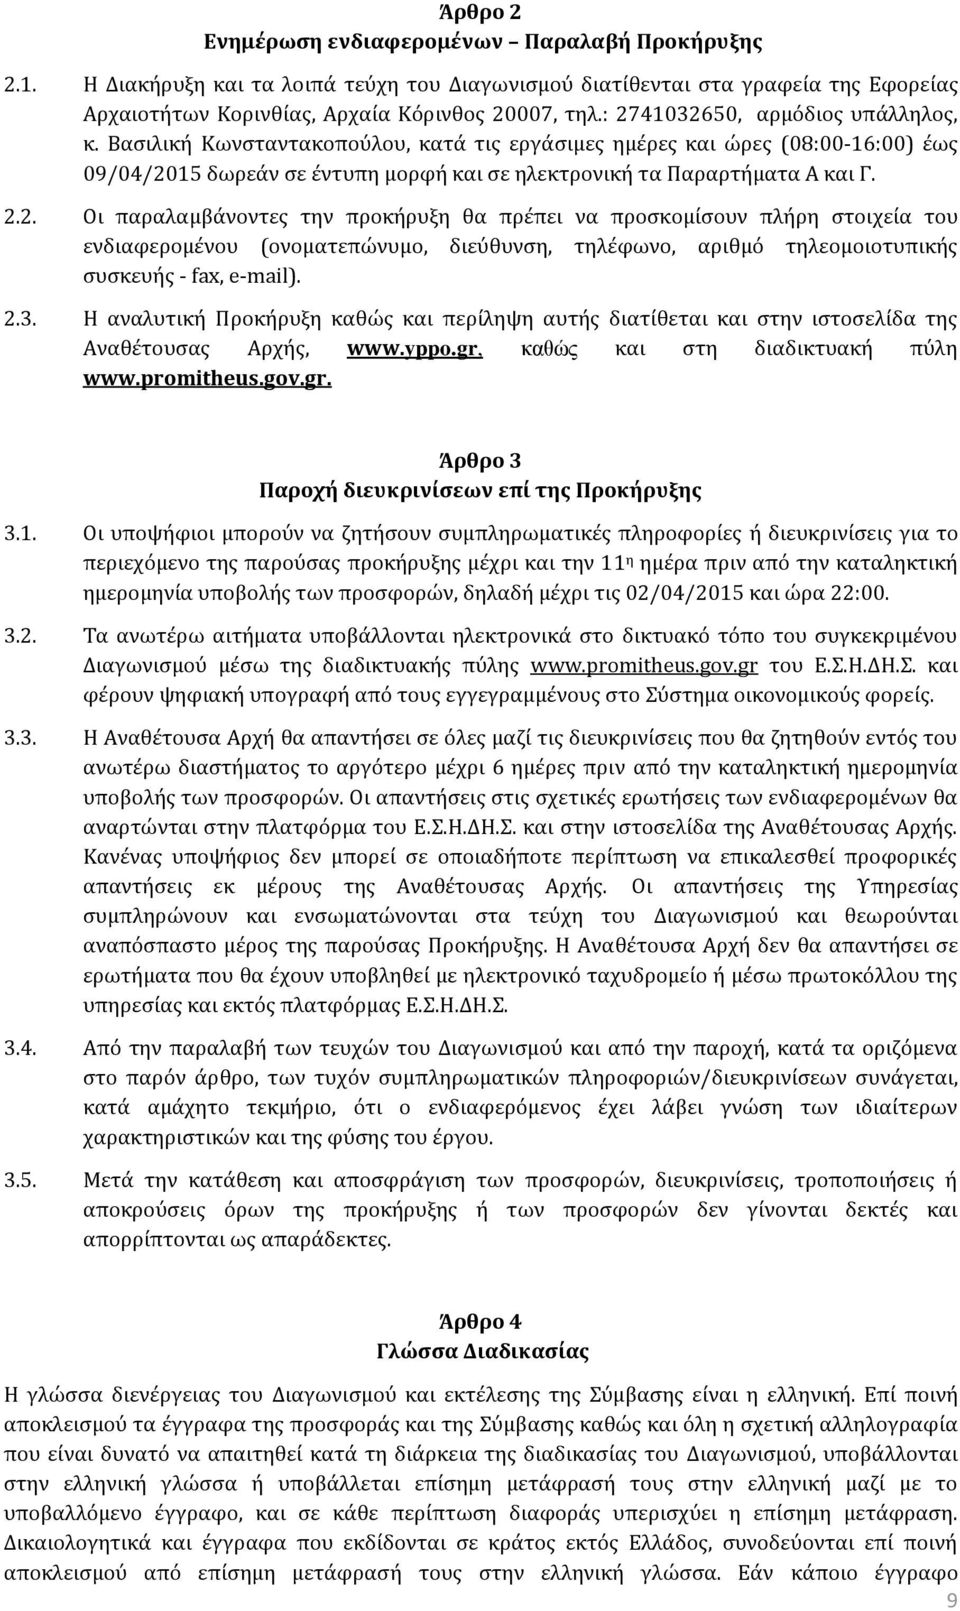 2.3. Η αναλυτική Προκήρυξη καθώς και περίληψη αυτής διατίθεται και στην ιστοσελίδα της Αναθέτουσας Αρχής, www.yppo.gr, καθώς και στη διαδικτυακή πύλη www.promitheus.gov.gr. Άρθρο 3 Παροχή διευκρινίσεων επί της Προκήρυξης 3.